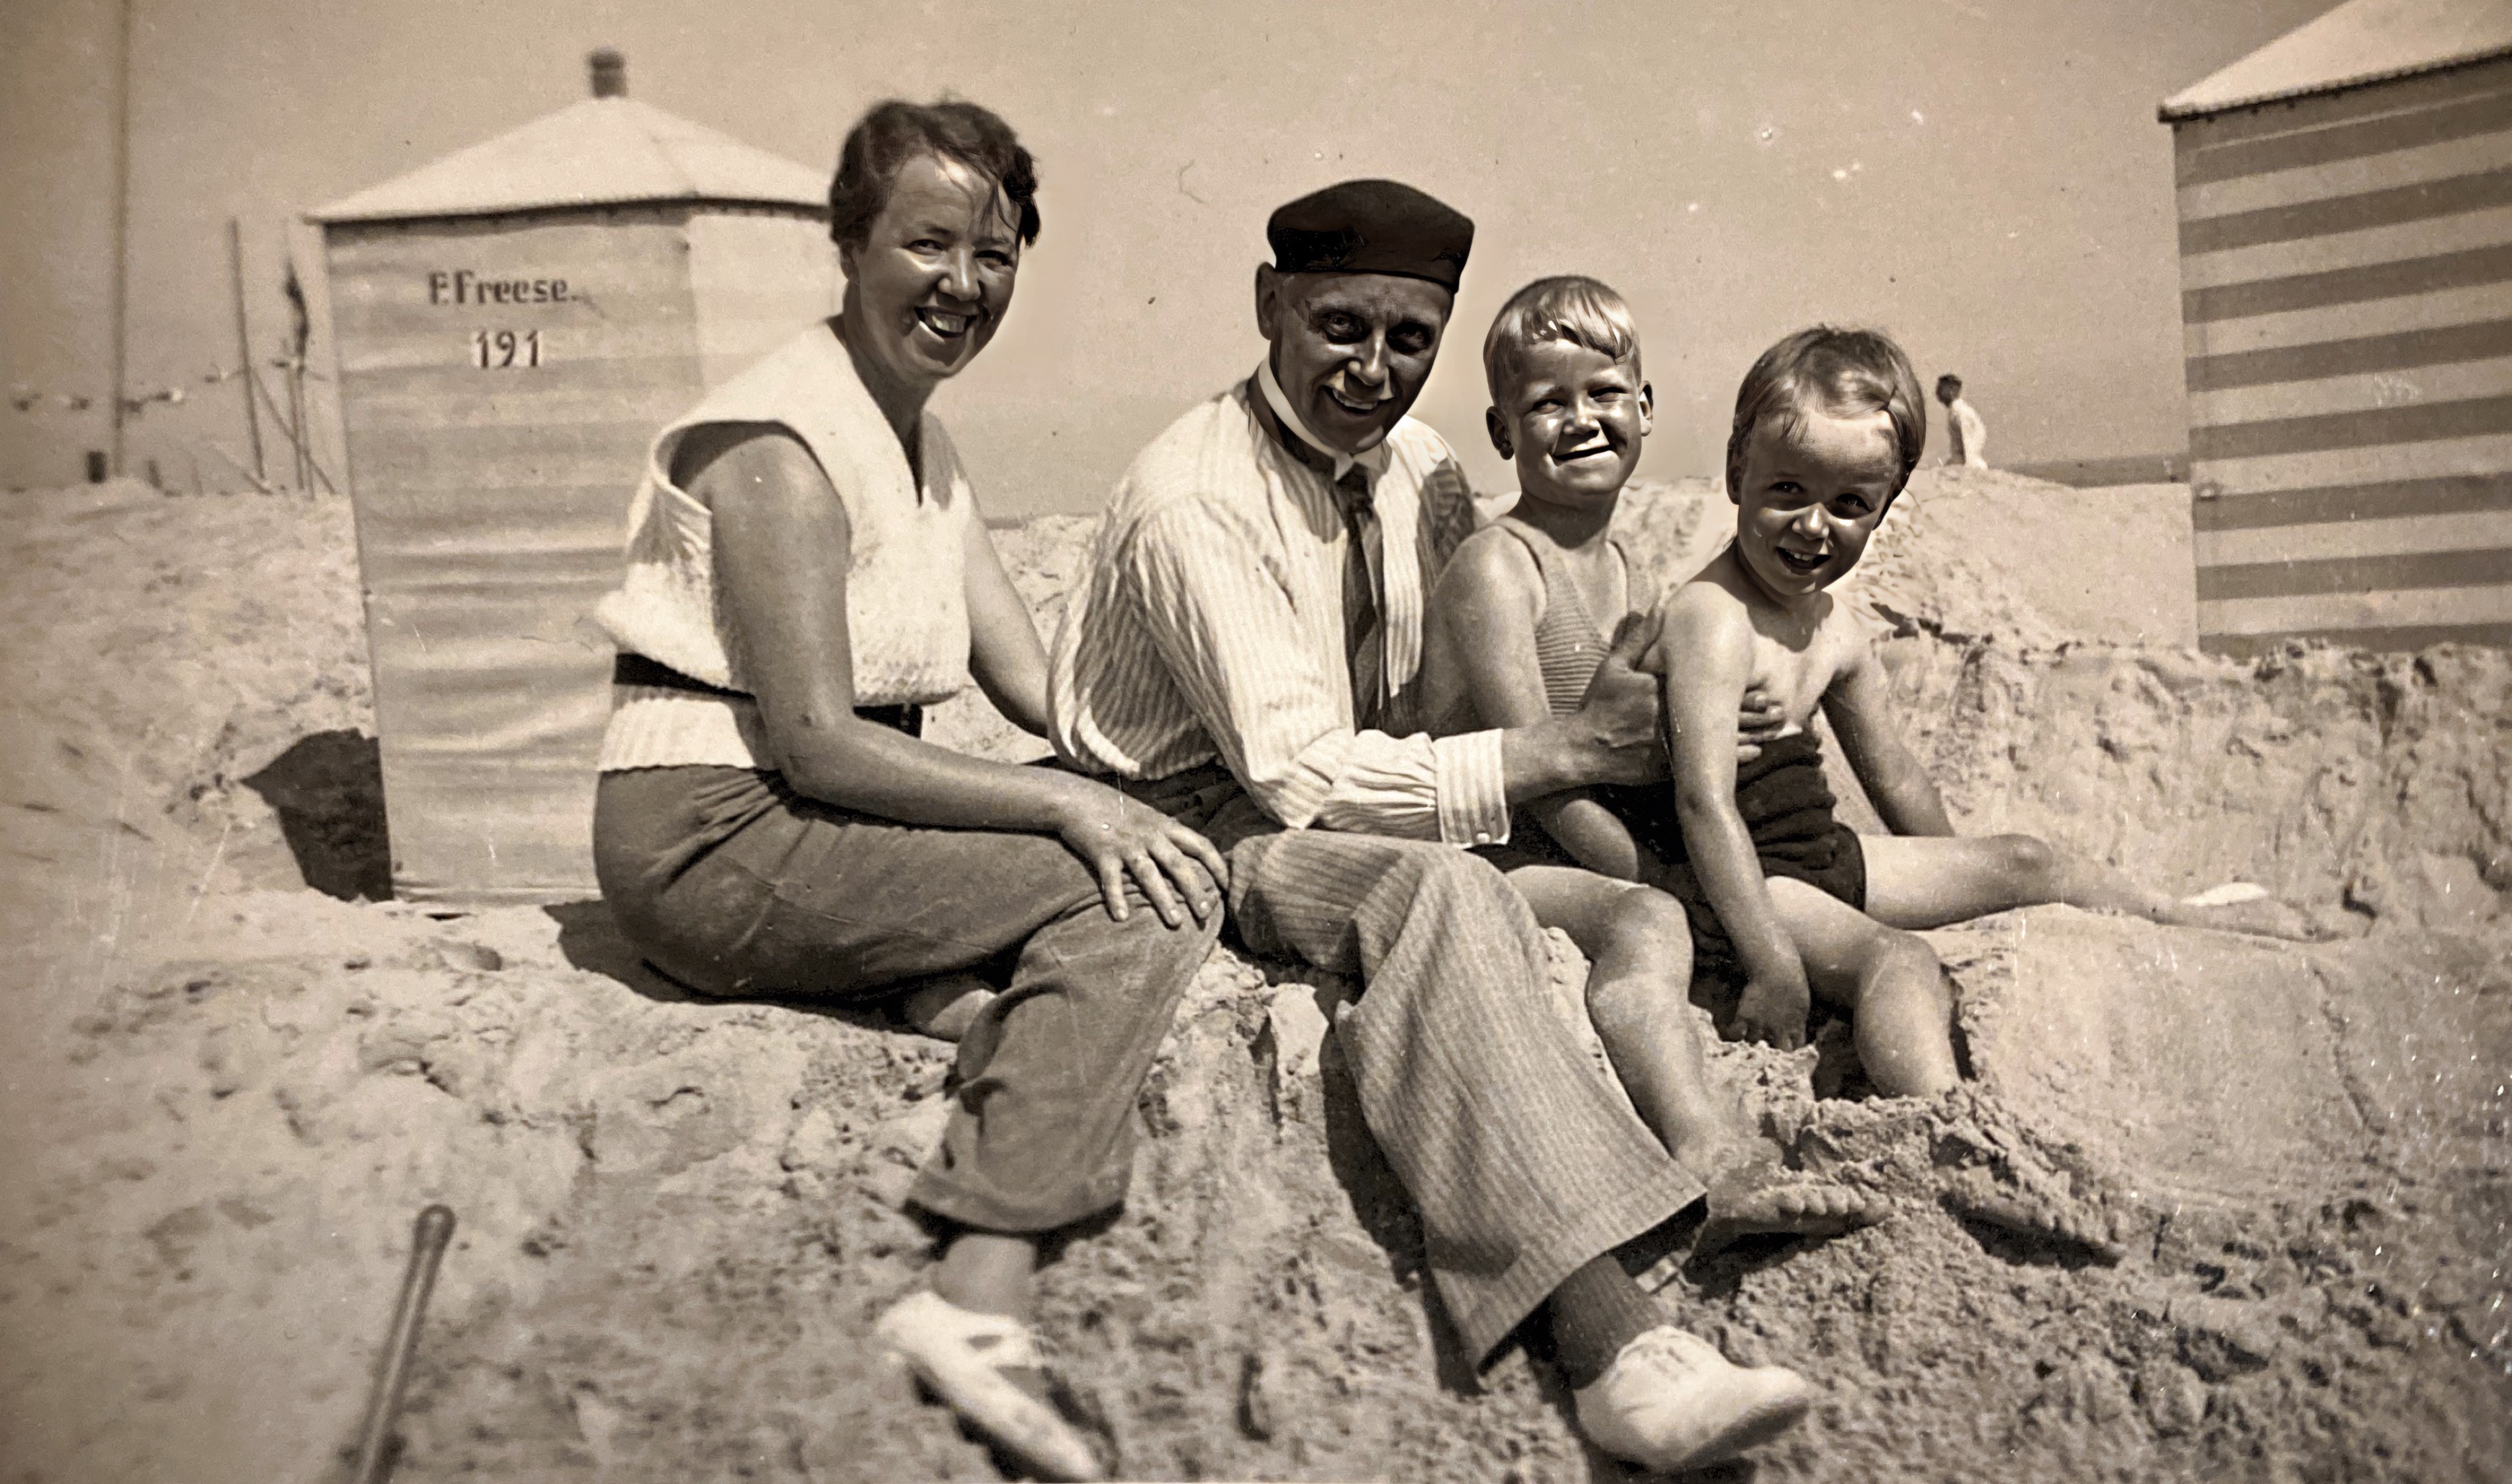 Sommerferien irgendwo an der Nordseeküste ca. 1933/34